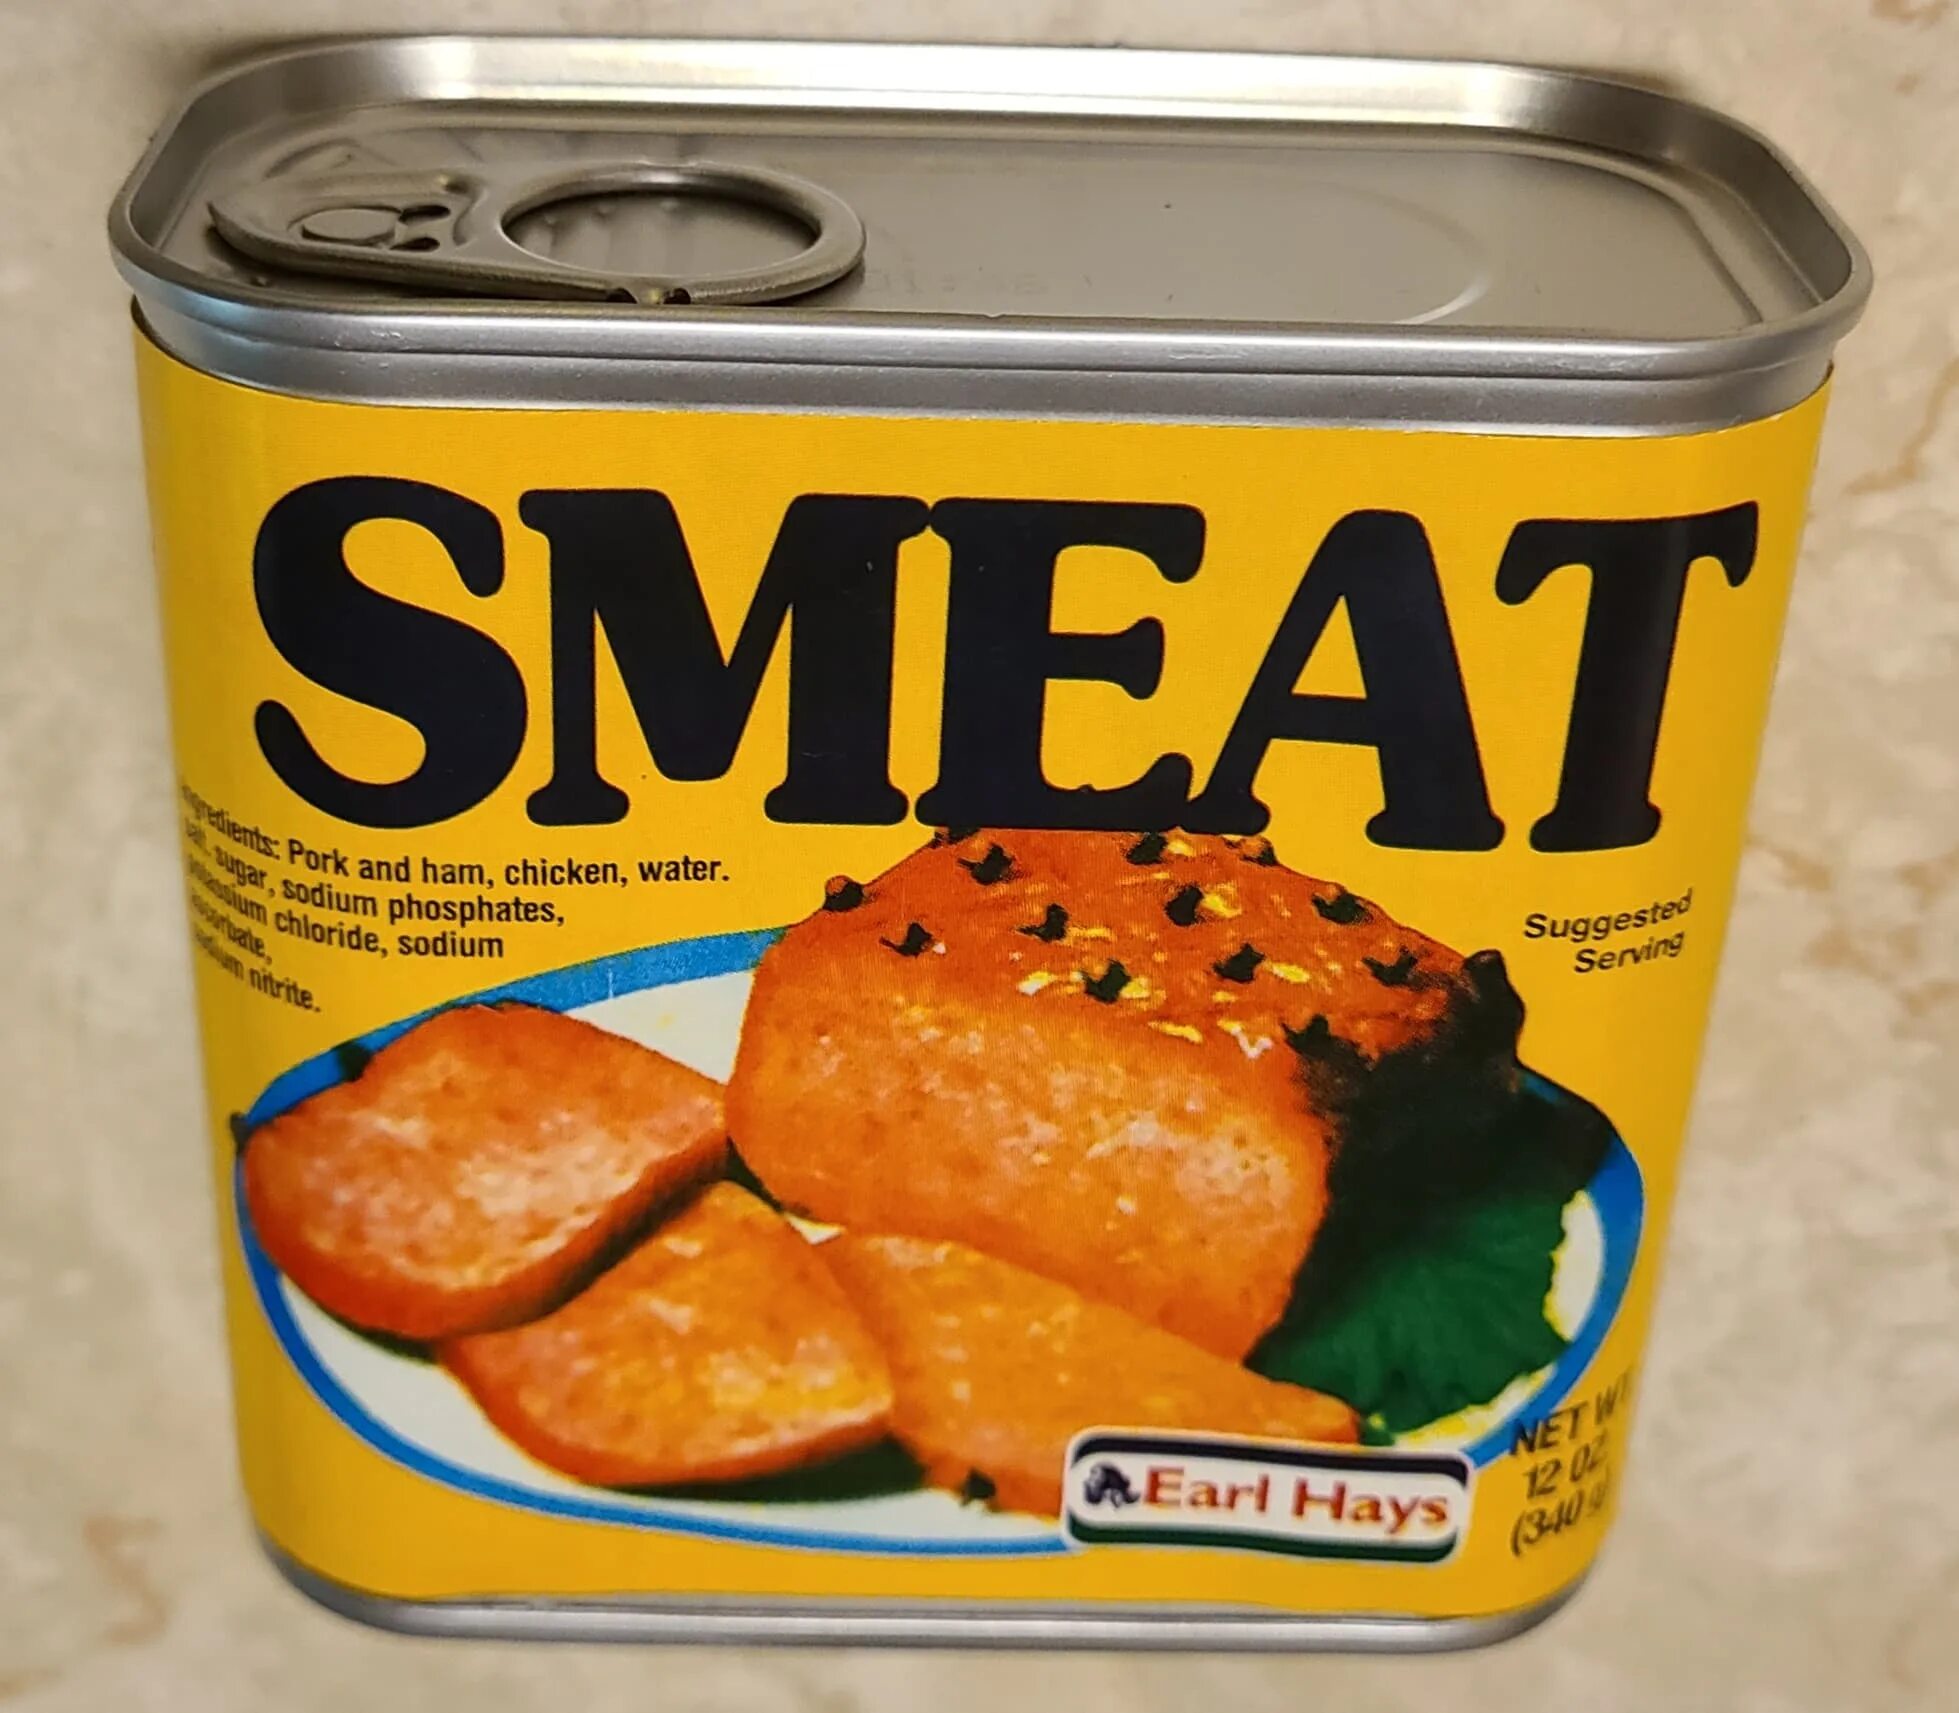 Smeat